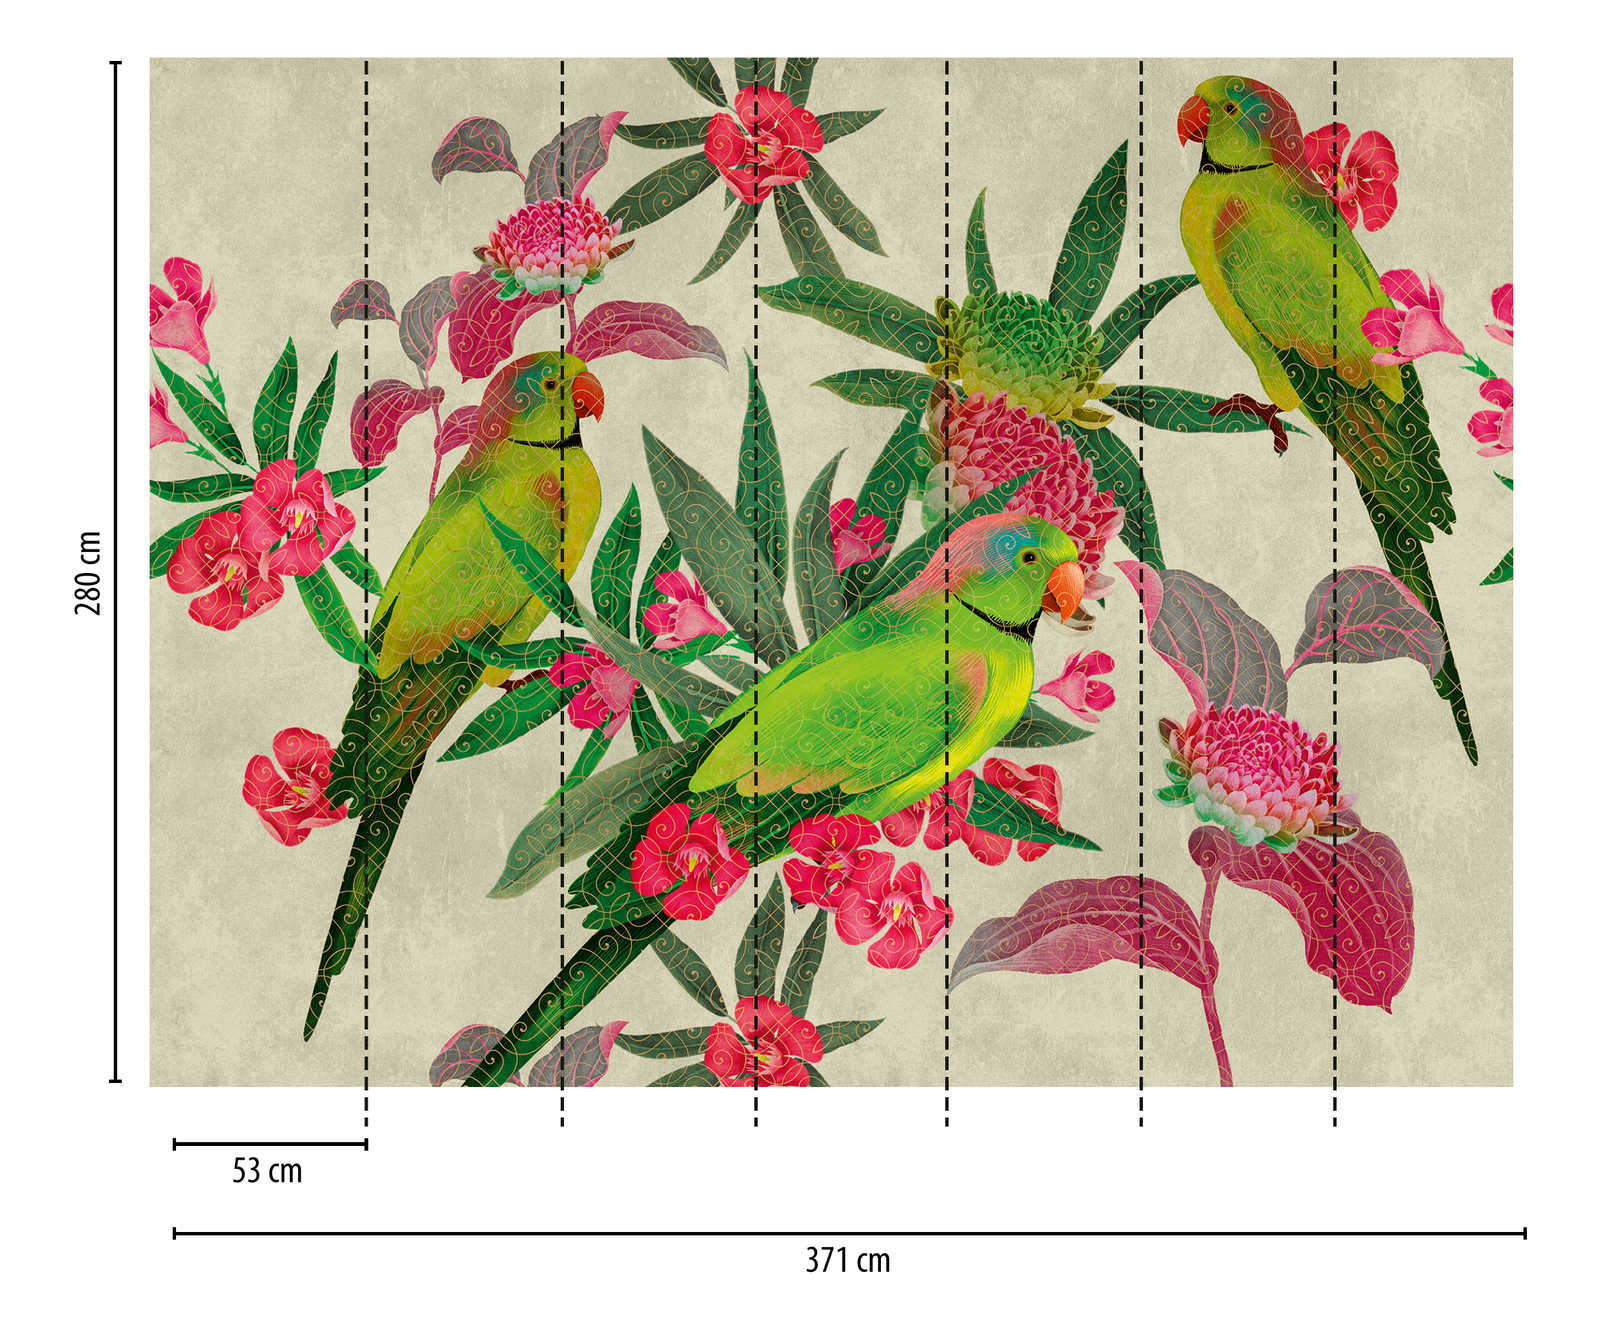             Behang nieuwigheid | papegaaien motief behang met bloemen in kunststijl
        